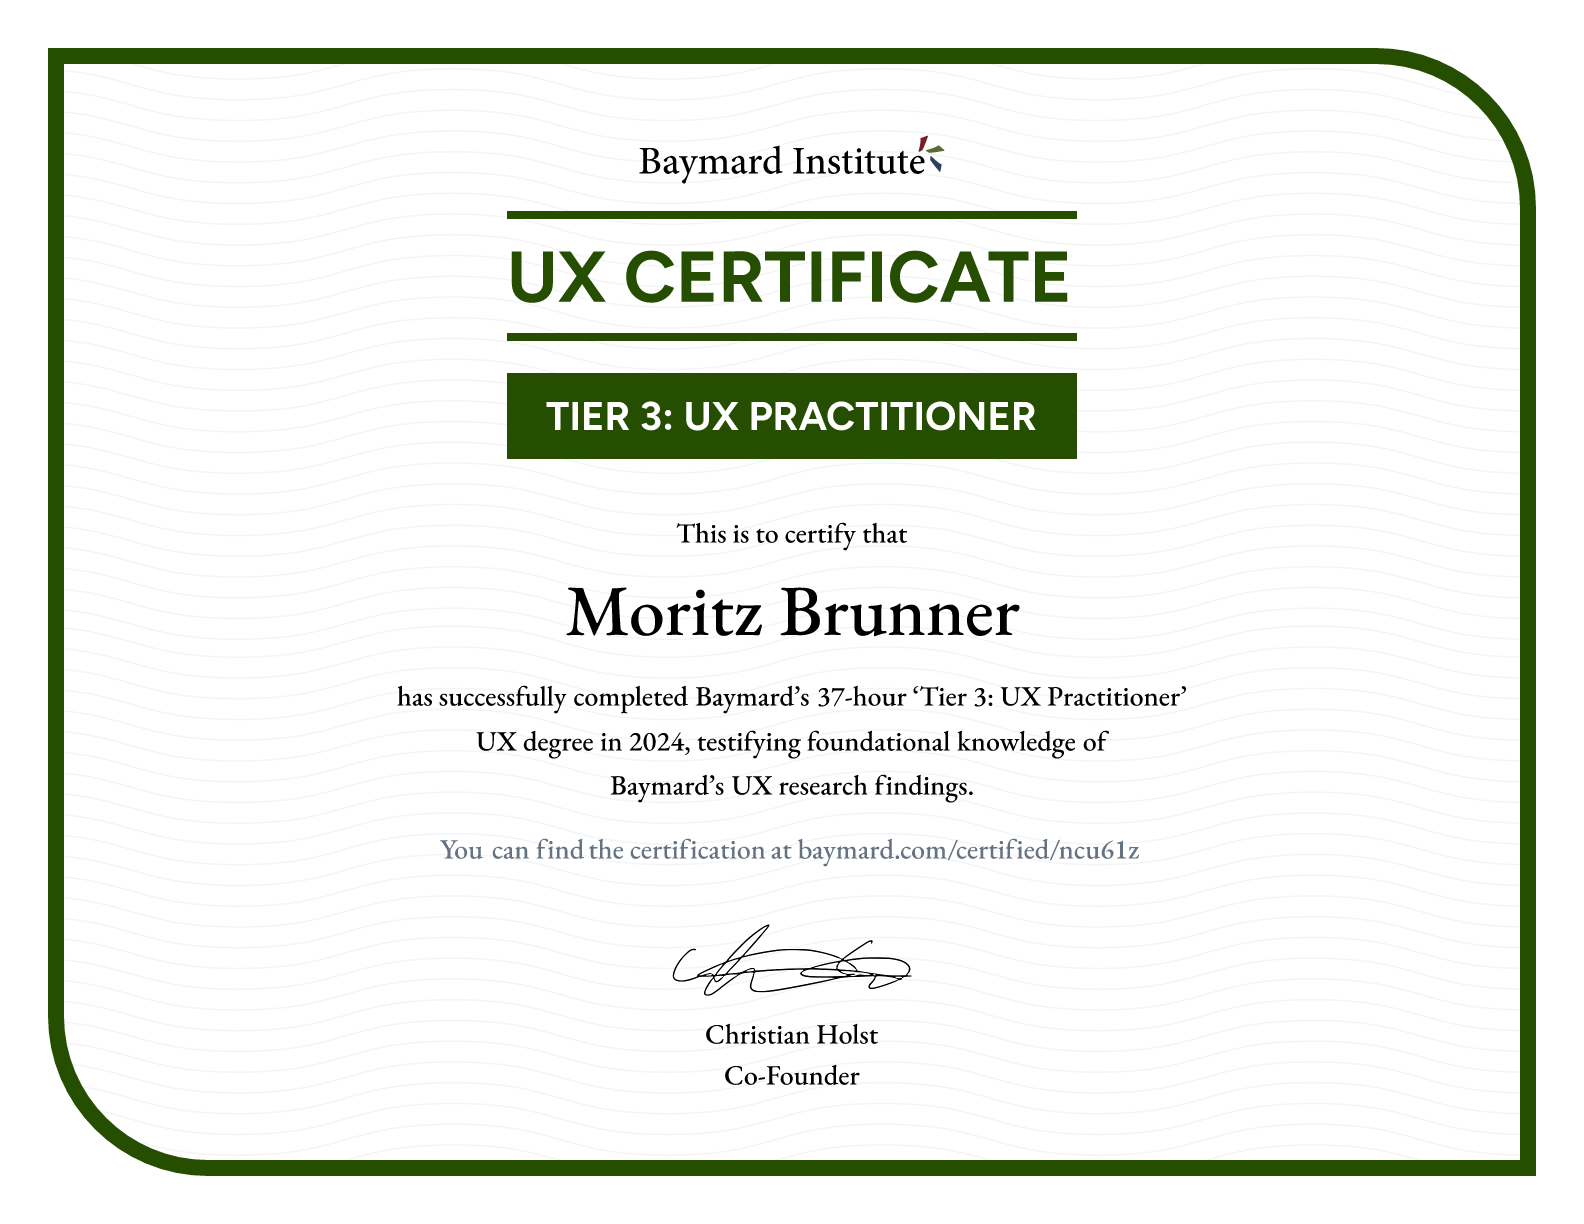 Moritz Brunner’s certificate